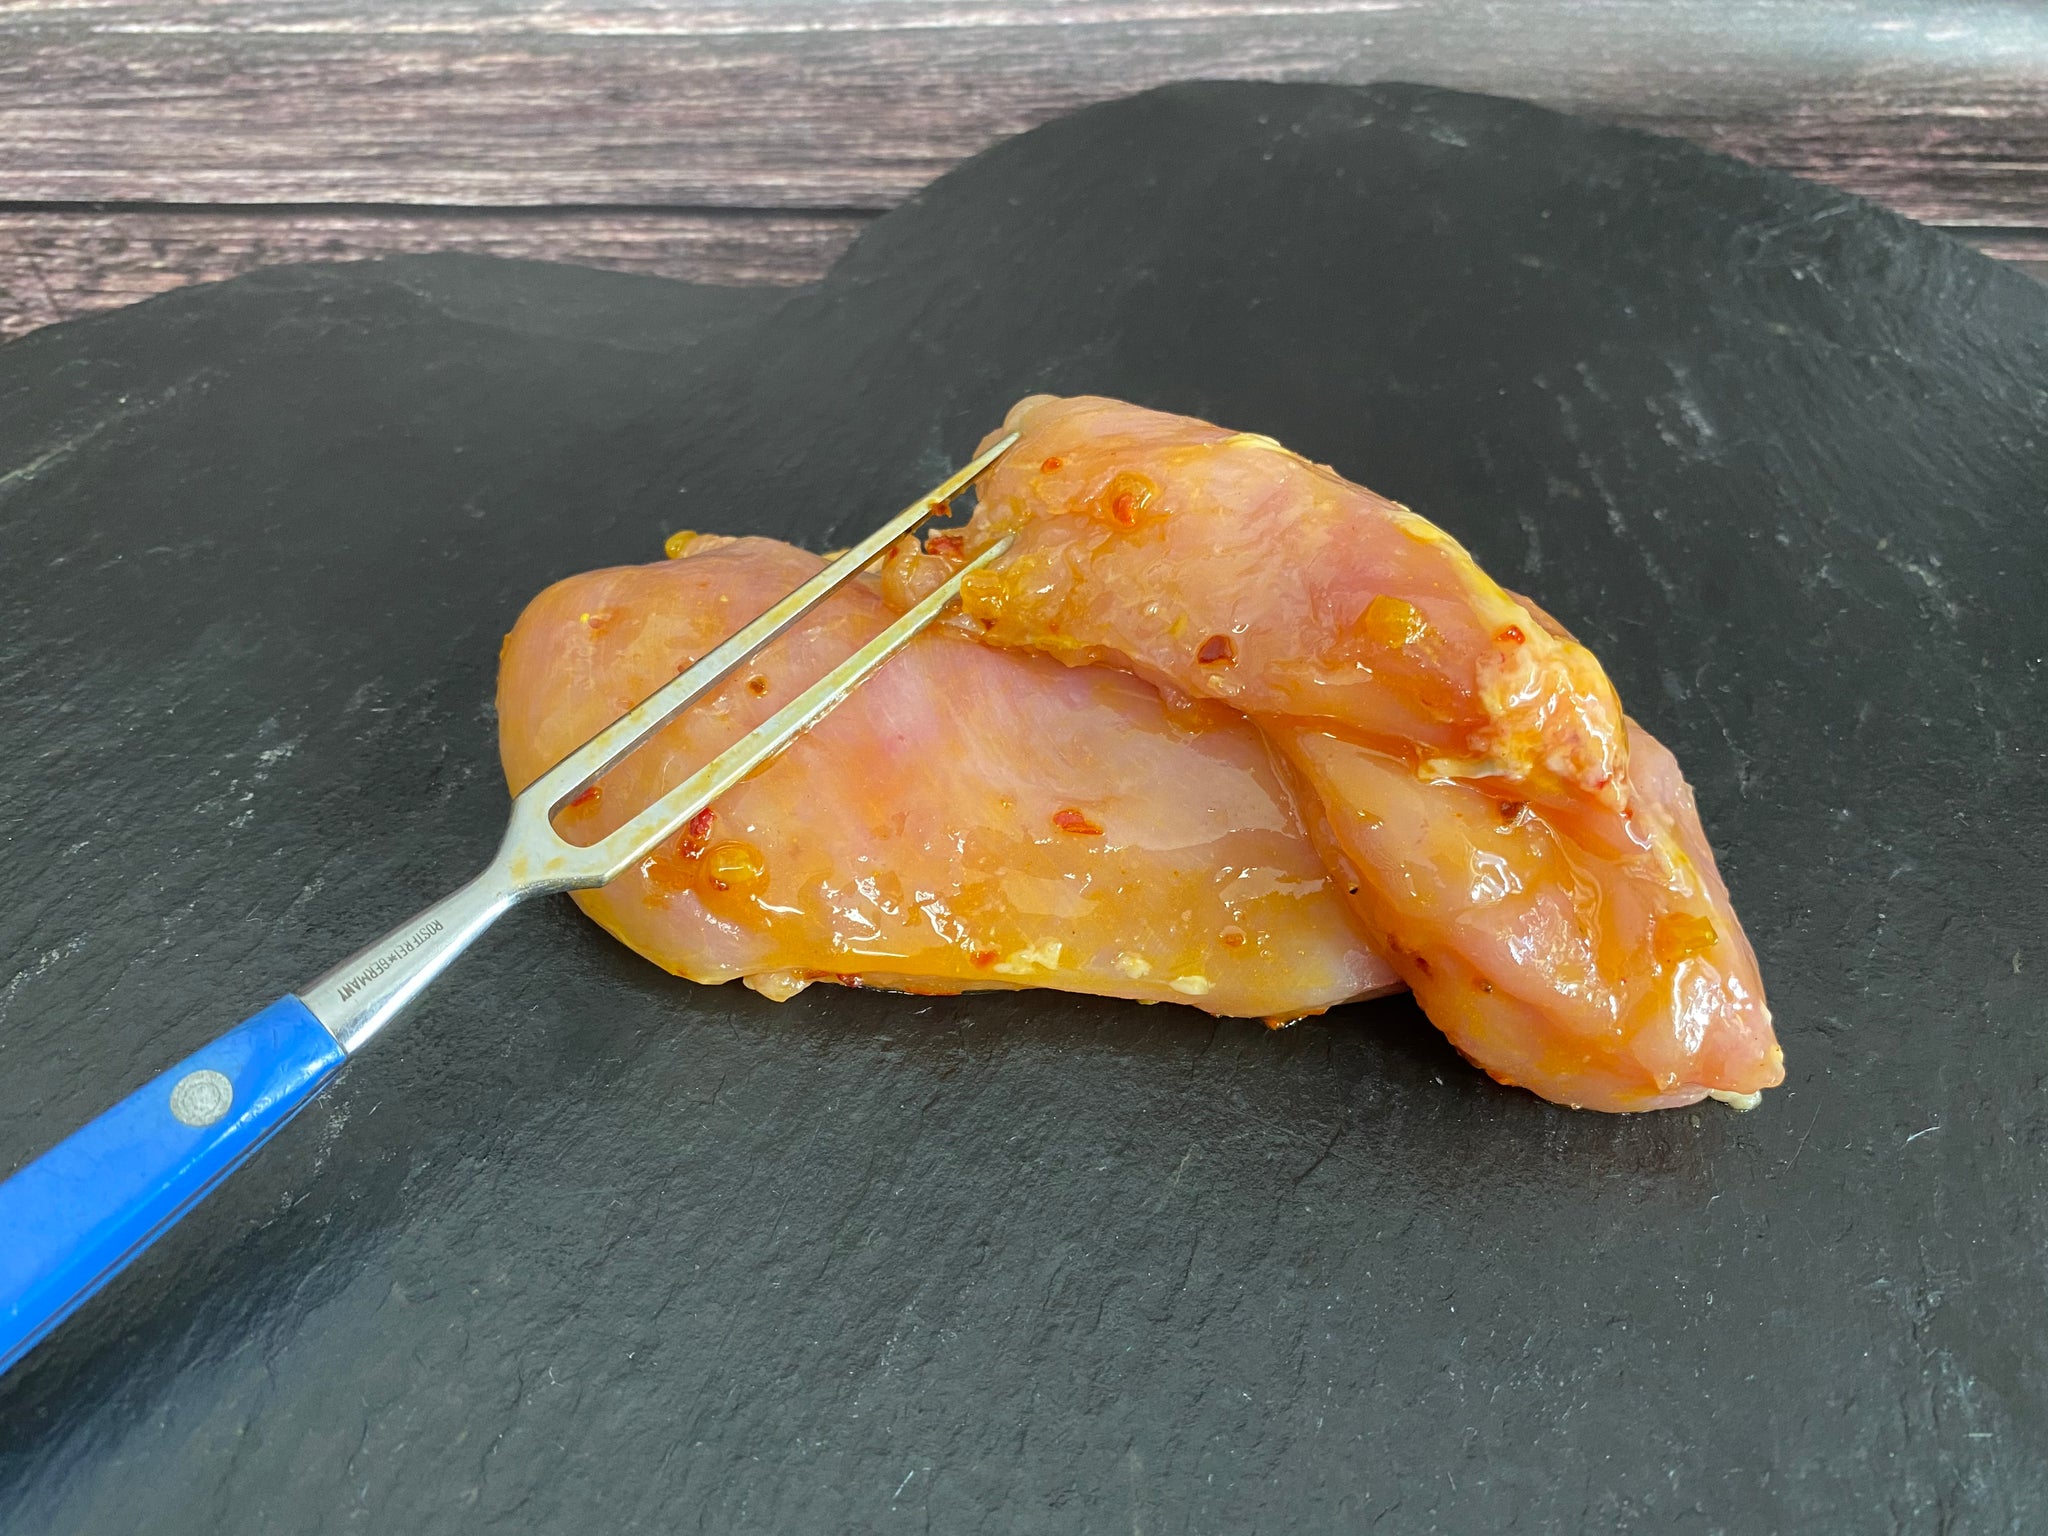 Hähnchenbrustfilet mariniert „Afrika Chilli“ - 250g Portion- Preis pro Kg 30,90€ - Anzahlung